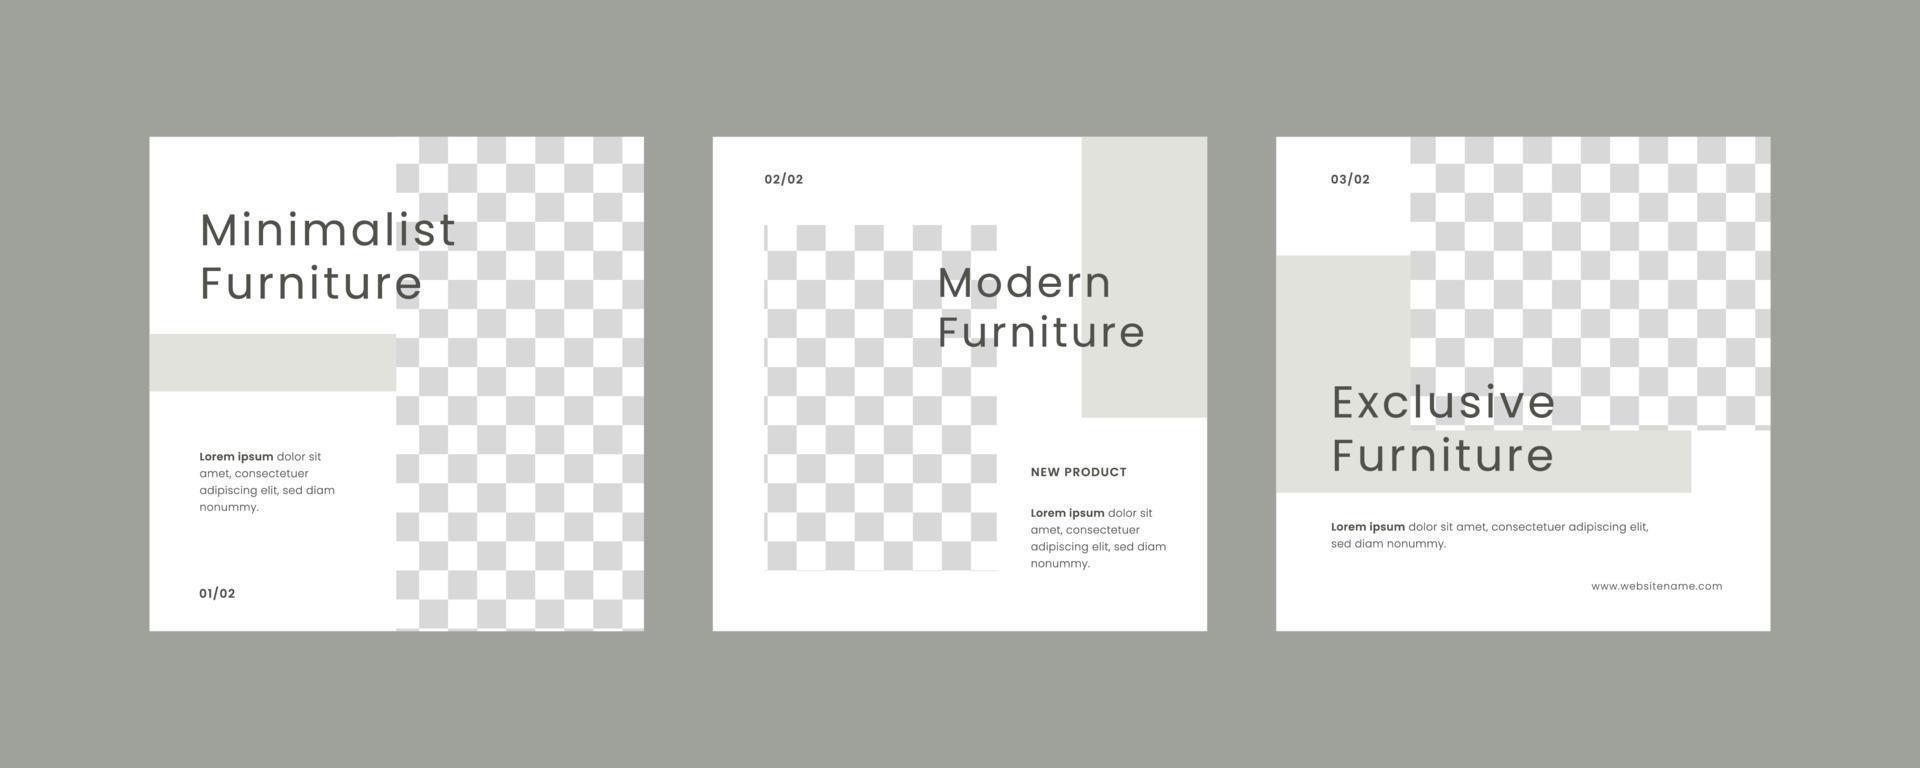 modern meubilair uitverkoop sjabloon sociaal media post in minimalistische stijl vector